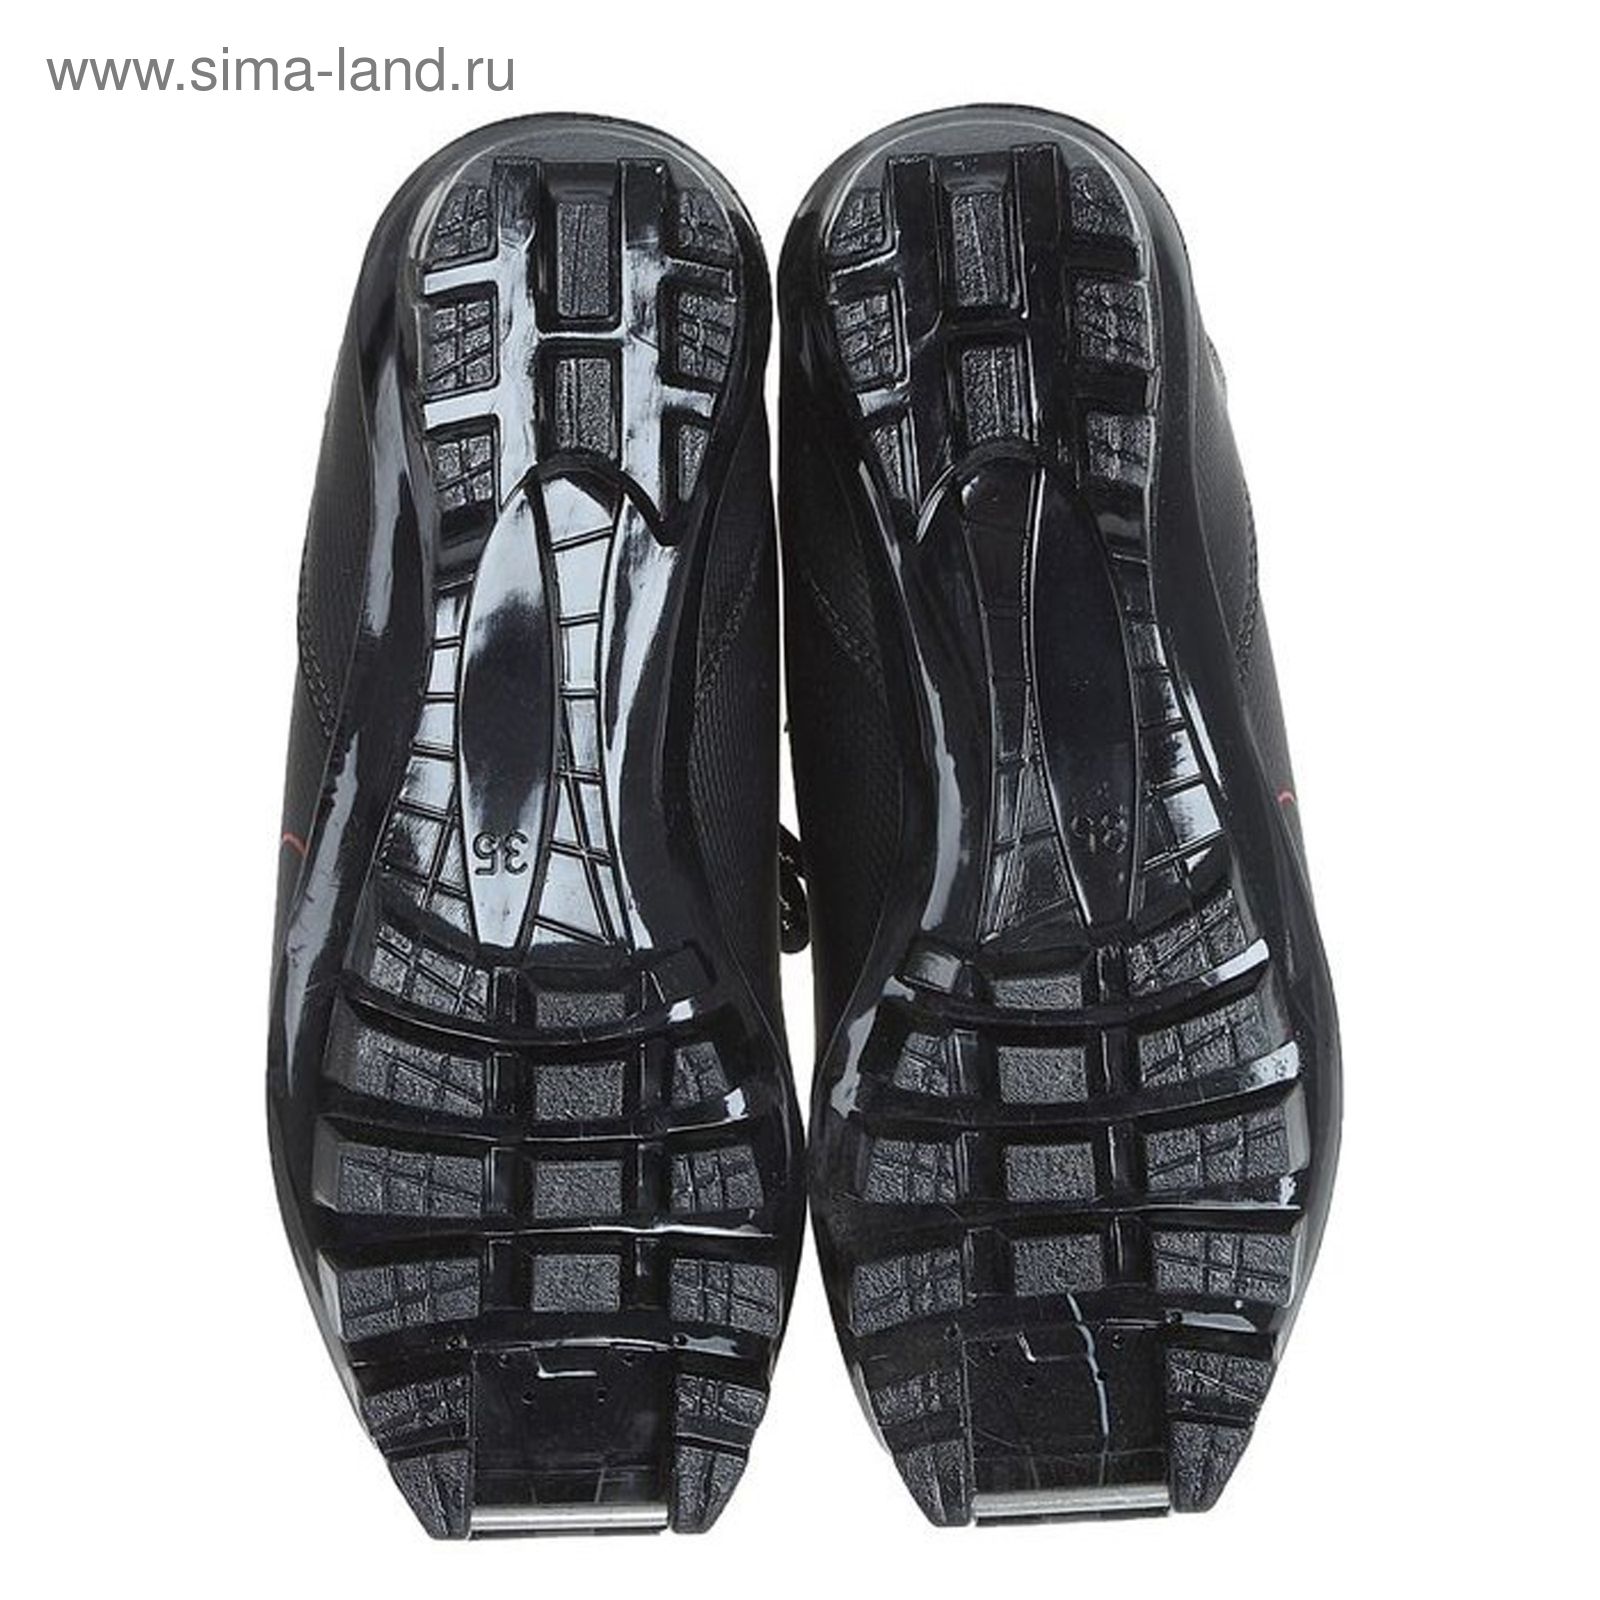 Ботинки лыжные TREK Olimpia NNN ИК, размер 37, цвет: серебристый